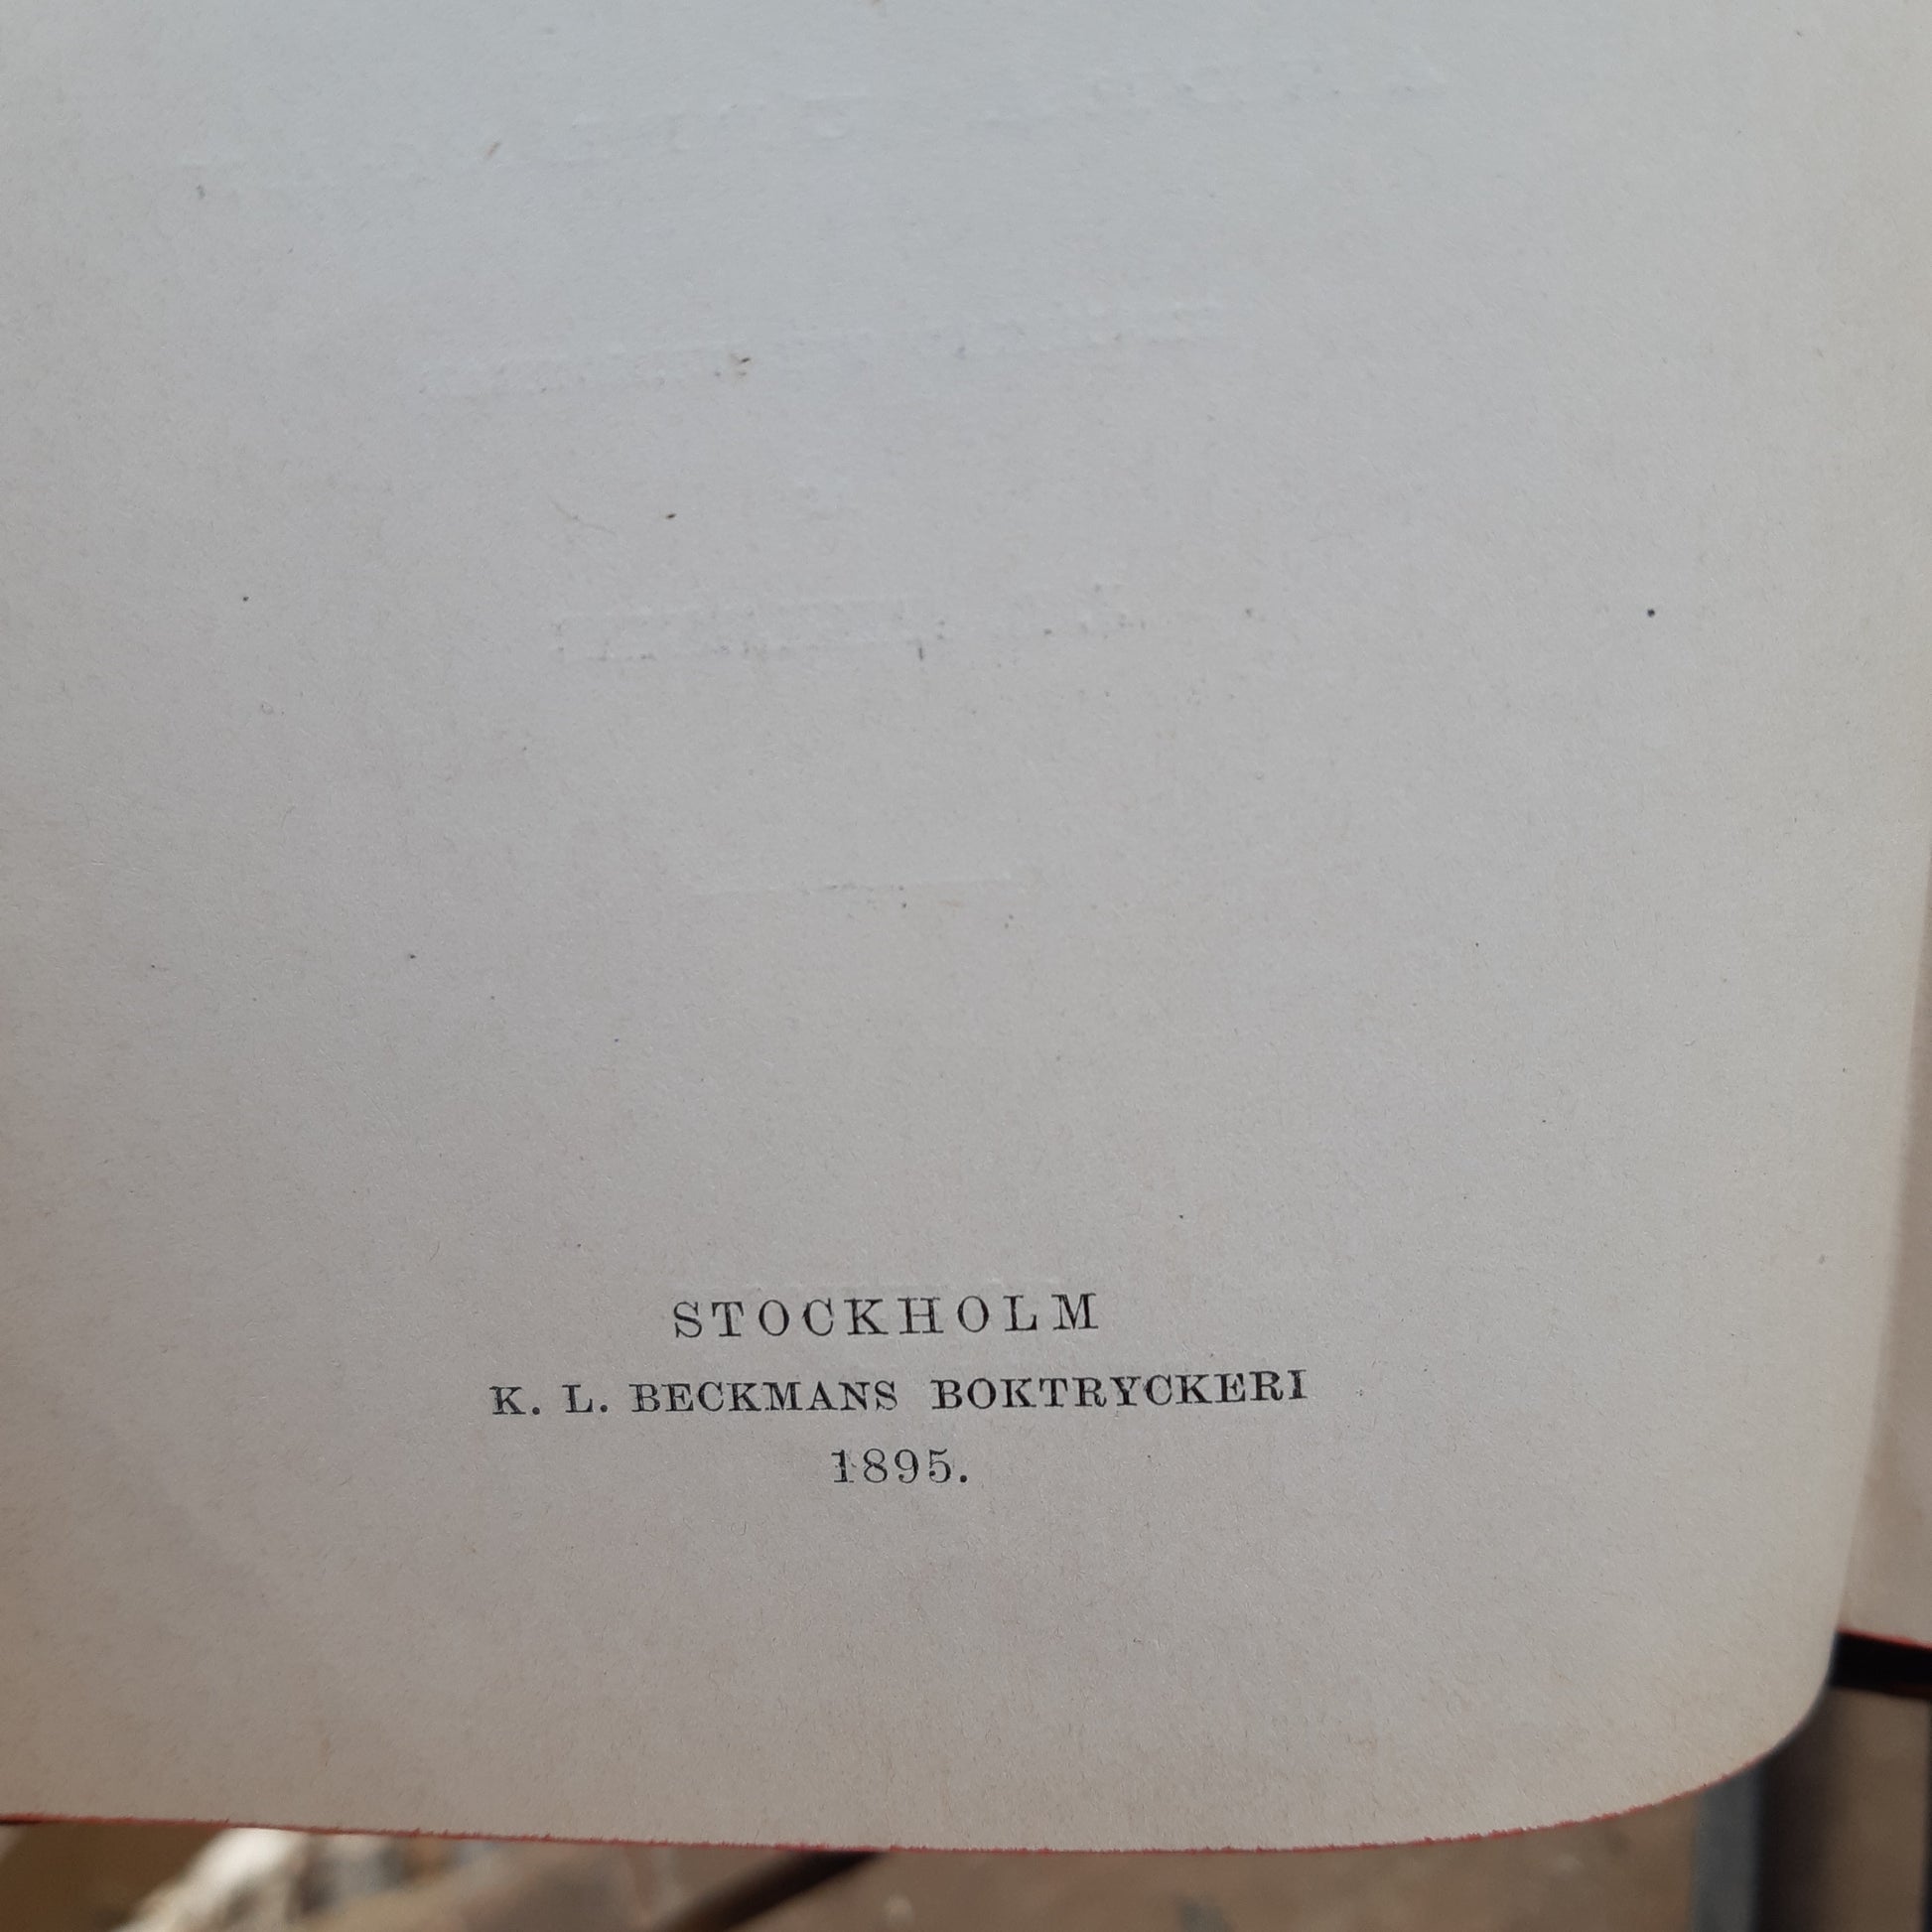 dansk-norsk och svensk ordbok - a.f. dalin - vuodelta 1895